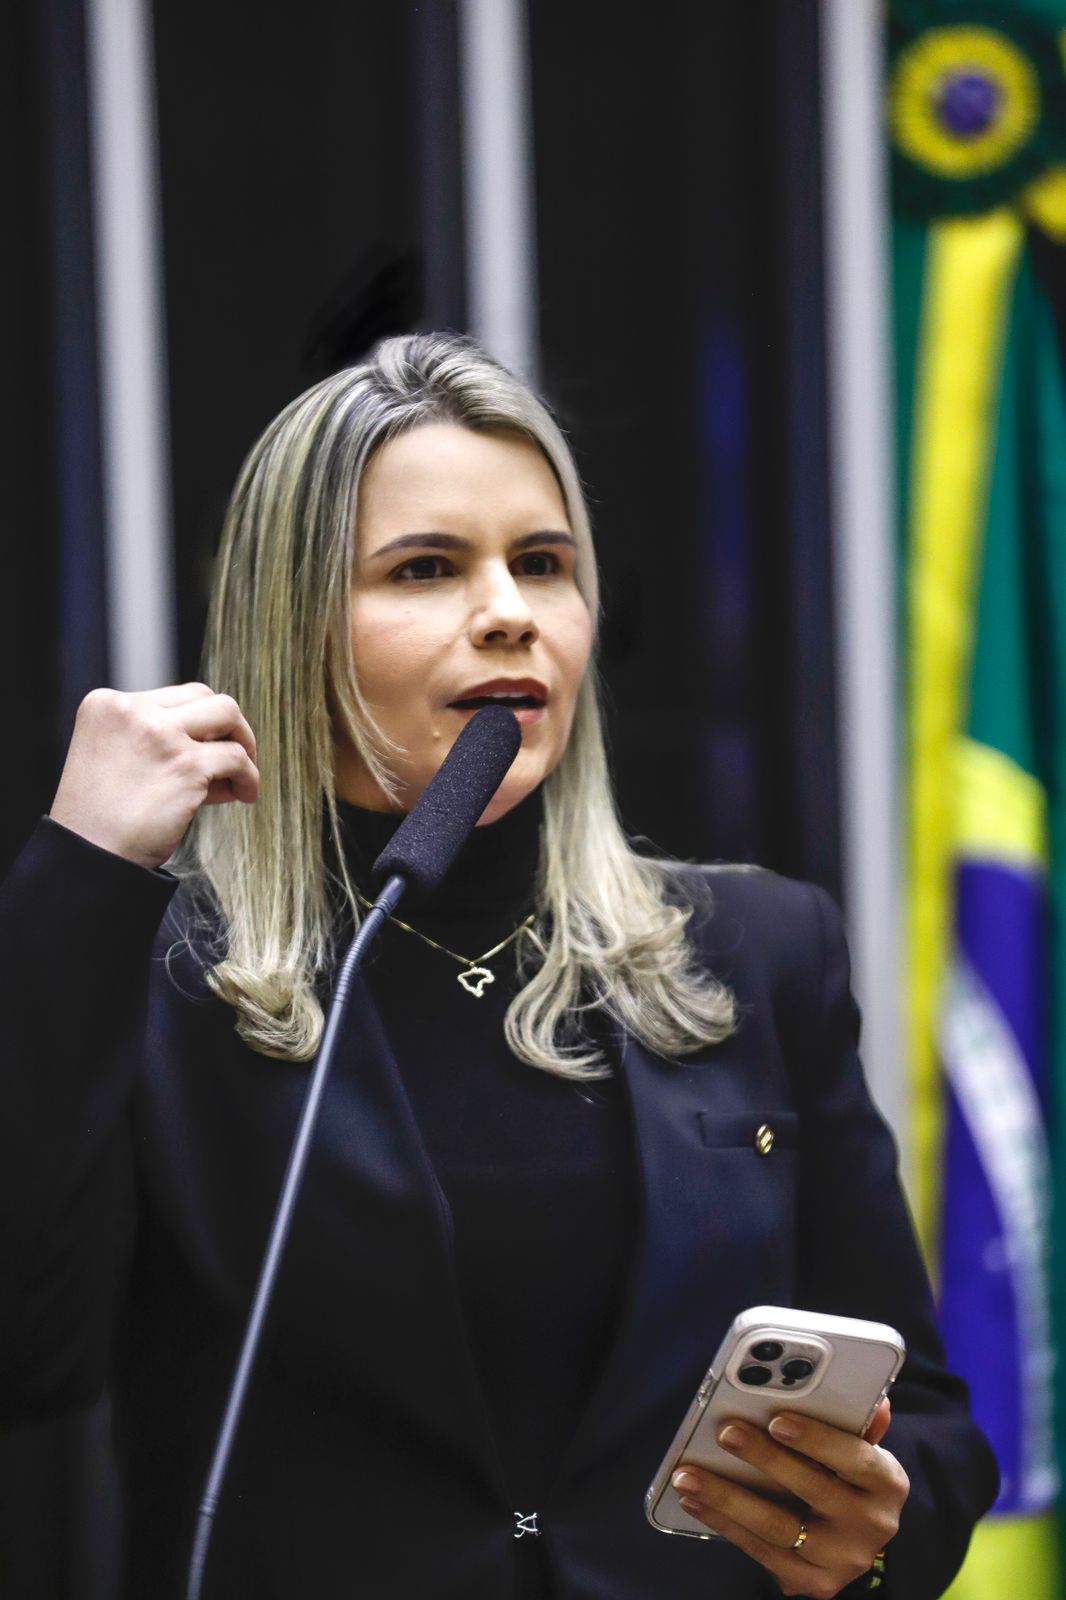 clarissa-tercio-critica-postura-do-presidente-lula-e-cobra-apoio-do-brasil-a-israel